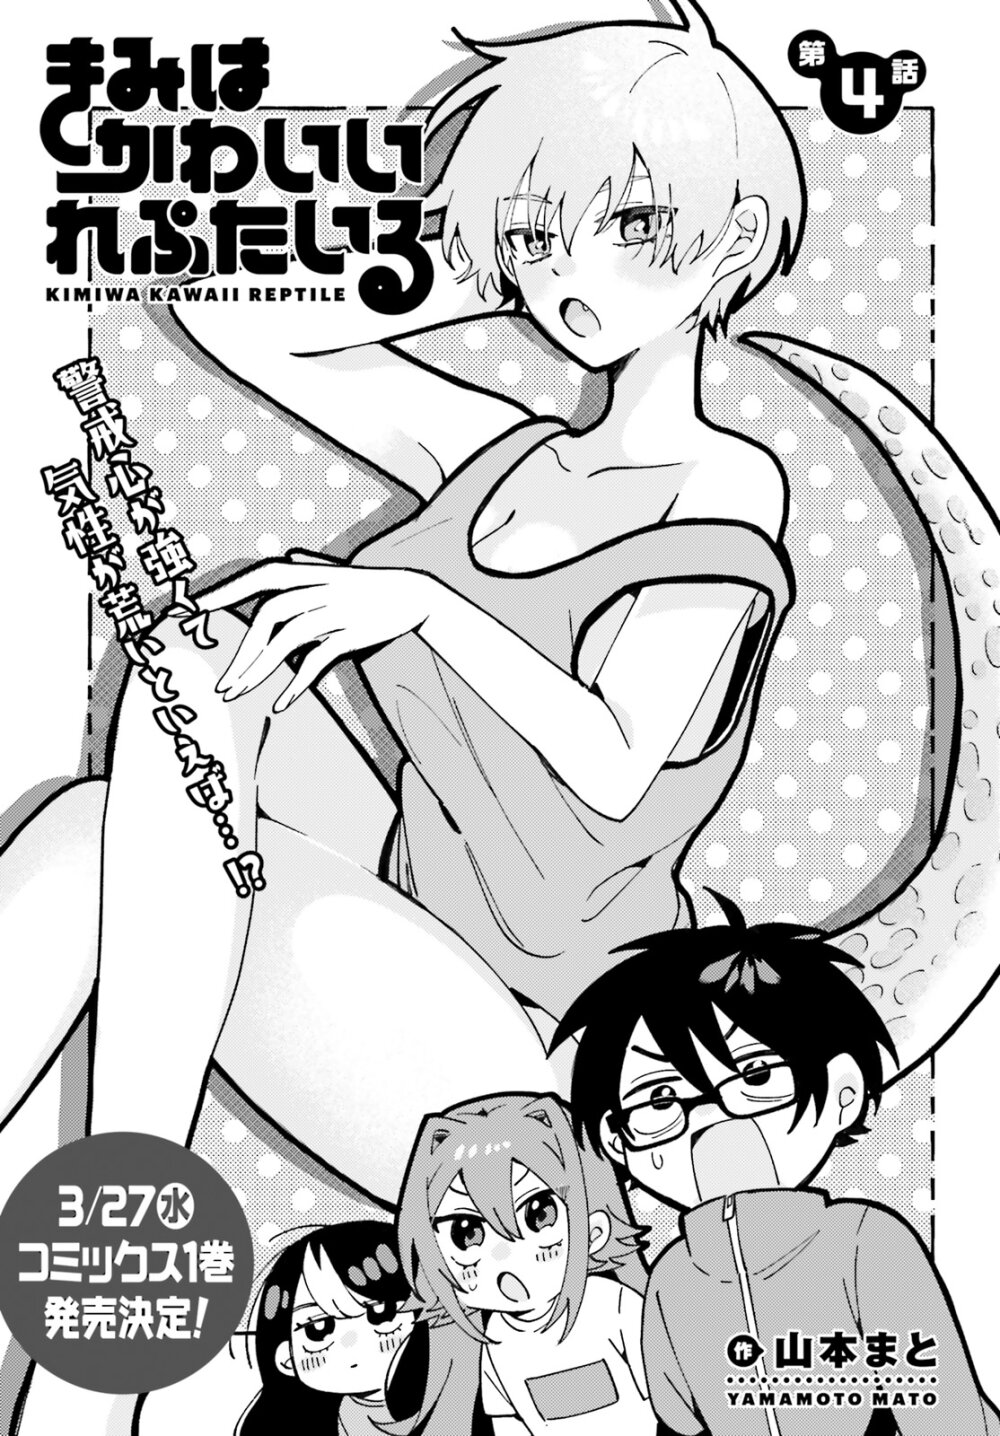 อ่านมังงะ Kimi wa Kawaii Reptile ตอนที่ 4/0.jpg